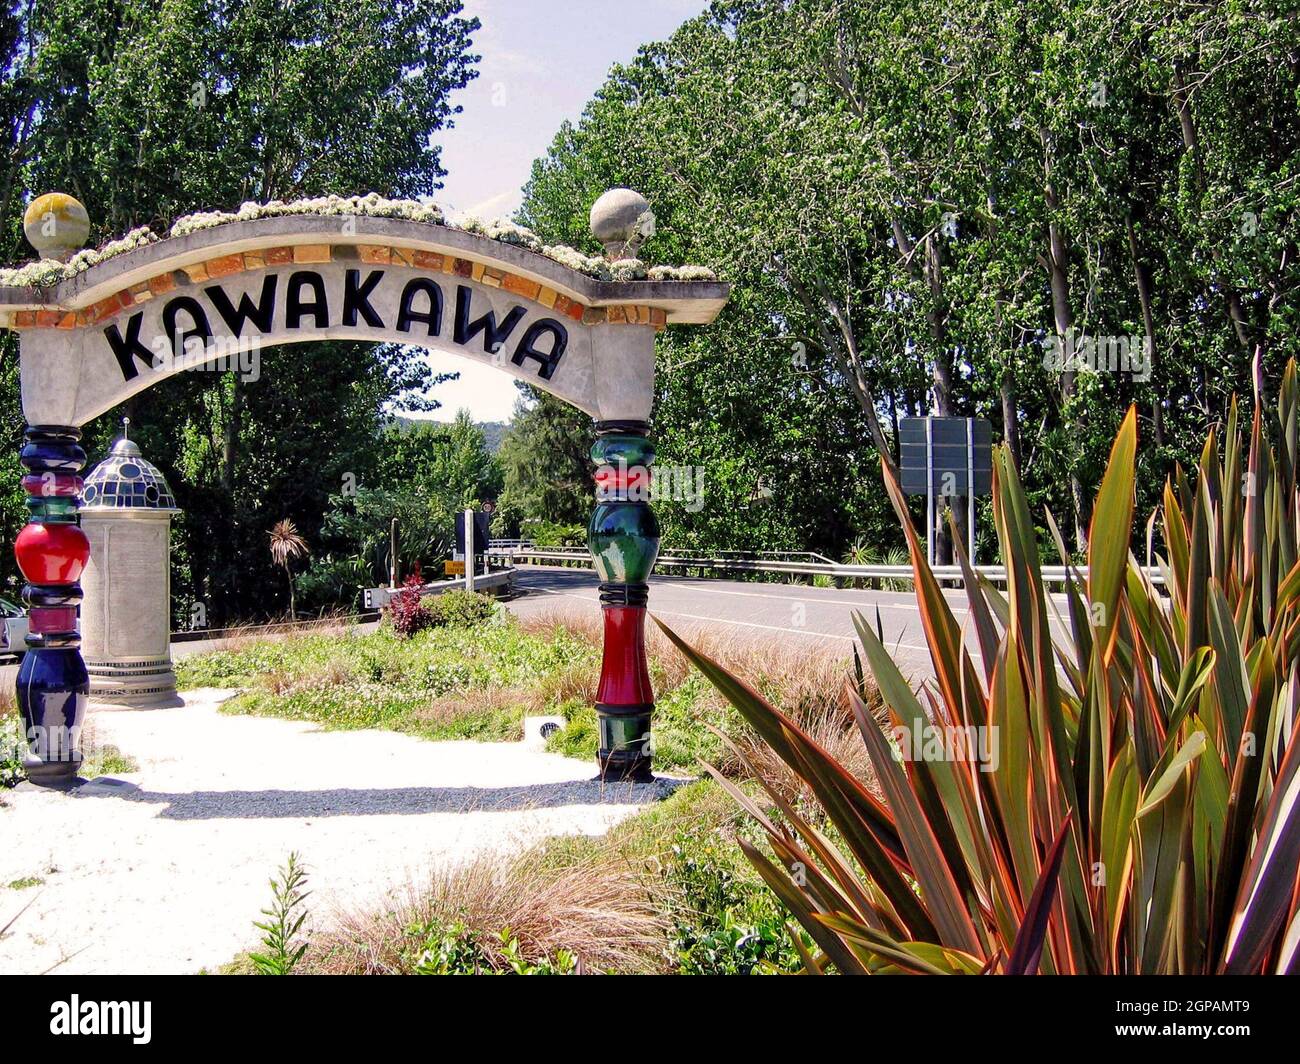 Kawakawa nella Baia delle Isole, nell'Isola del Nord della Nuova Zelanda, prende il nome dall'arbusto indigeno e dalla pianta medicinale. La città è diventata nota per i servizi igienici pubblici di Kawakawa che nel 1998 furono trasformati da Friedensreich Hundertwasser, insieme all'aiuto della comunità, in una destinazione a se stessa. L'artista austriaco e il residente neozelandese vivevano qui dal 1975 fino alla sua morte nel 2000. Nel 200 ha regalato i servizi igienici alla città. L'arco indipendente e l'edificio dei servizi igienici sono stati progettati in uno stile esclusivo dell'artista. Foto Stock